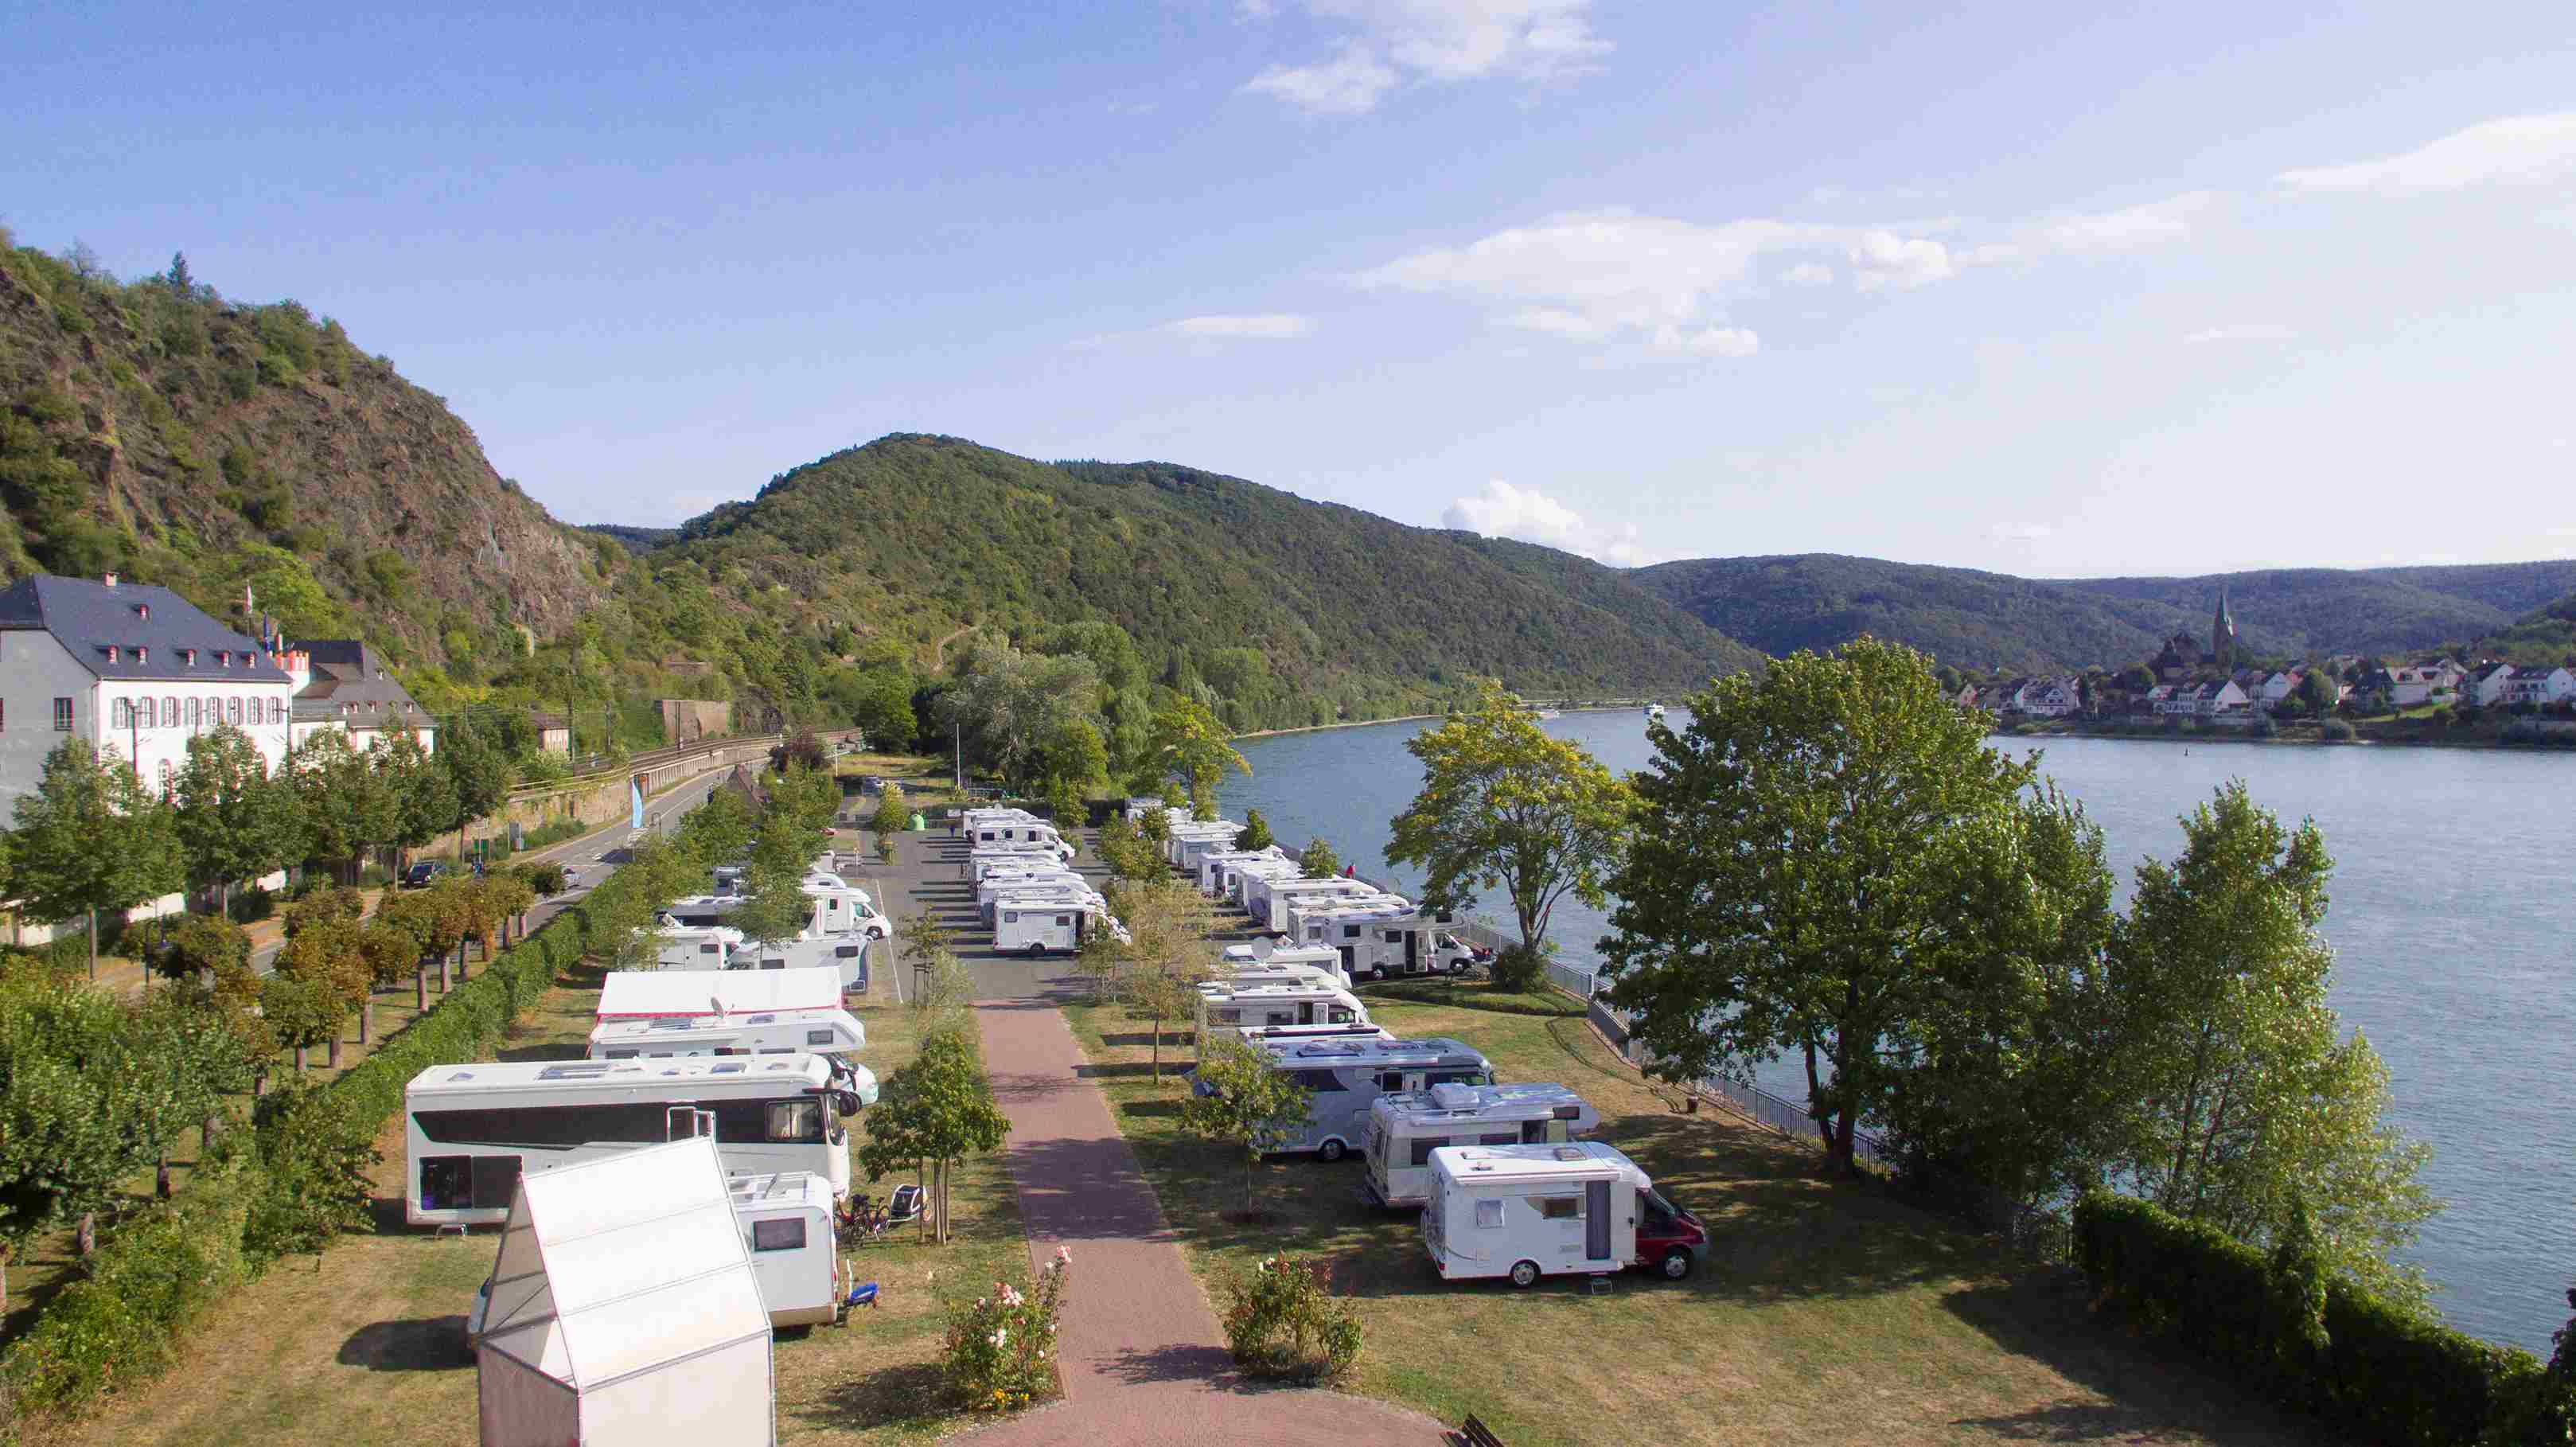 Vista aérea de um parque de campismo com várias autocaravanas junto ao lago